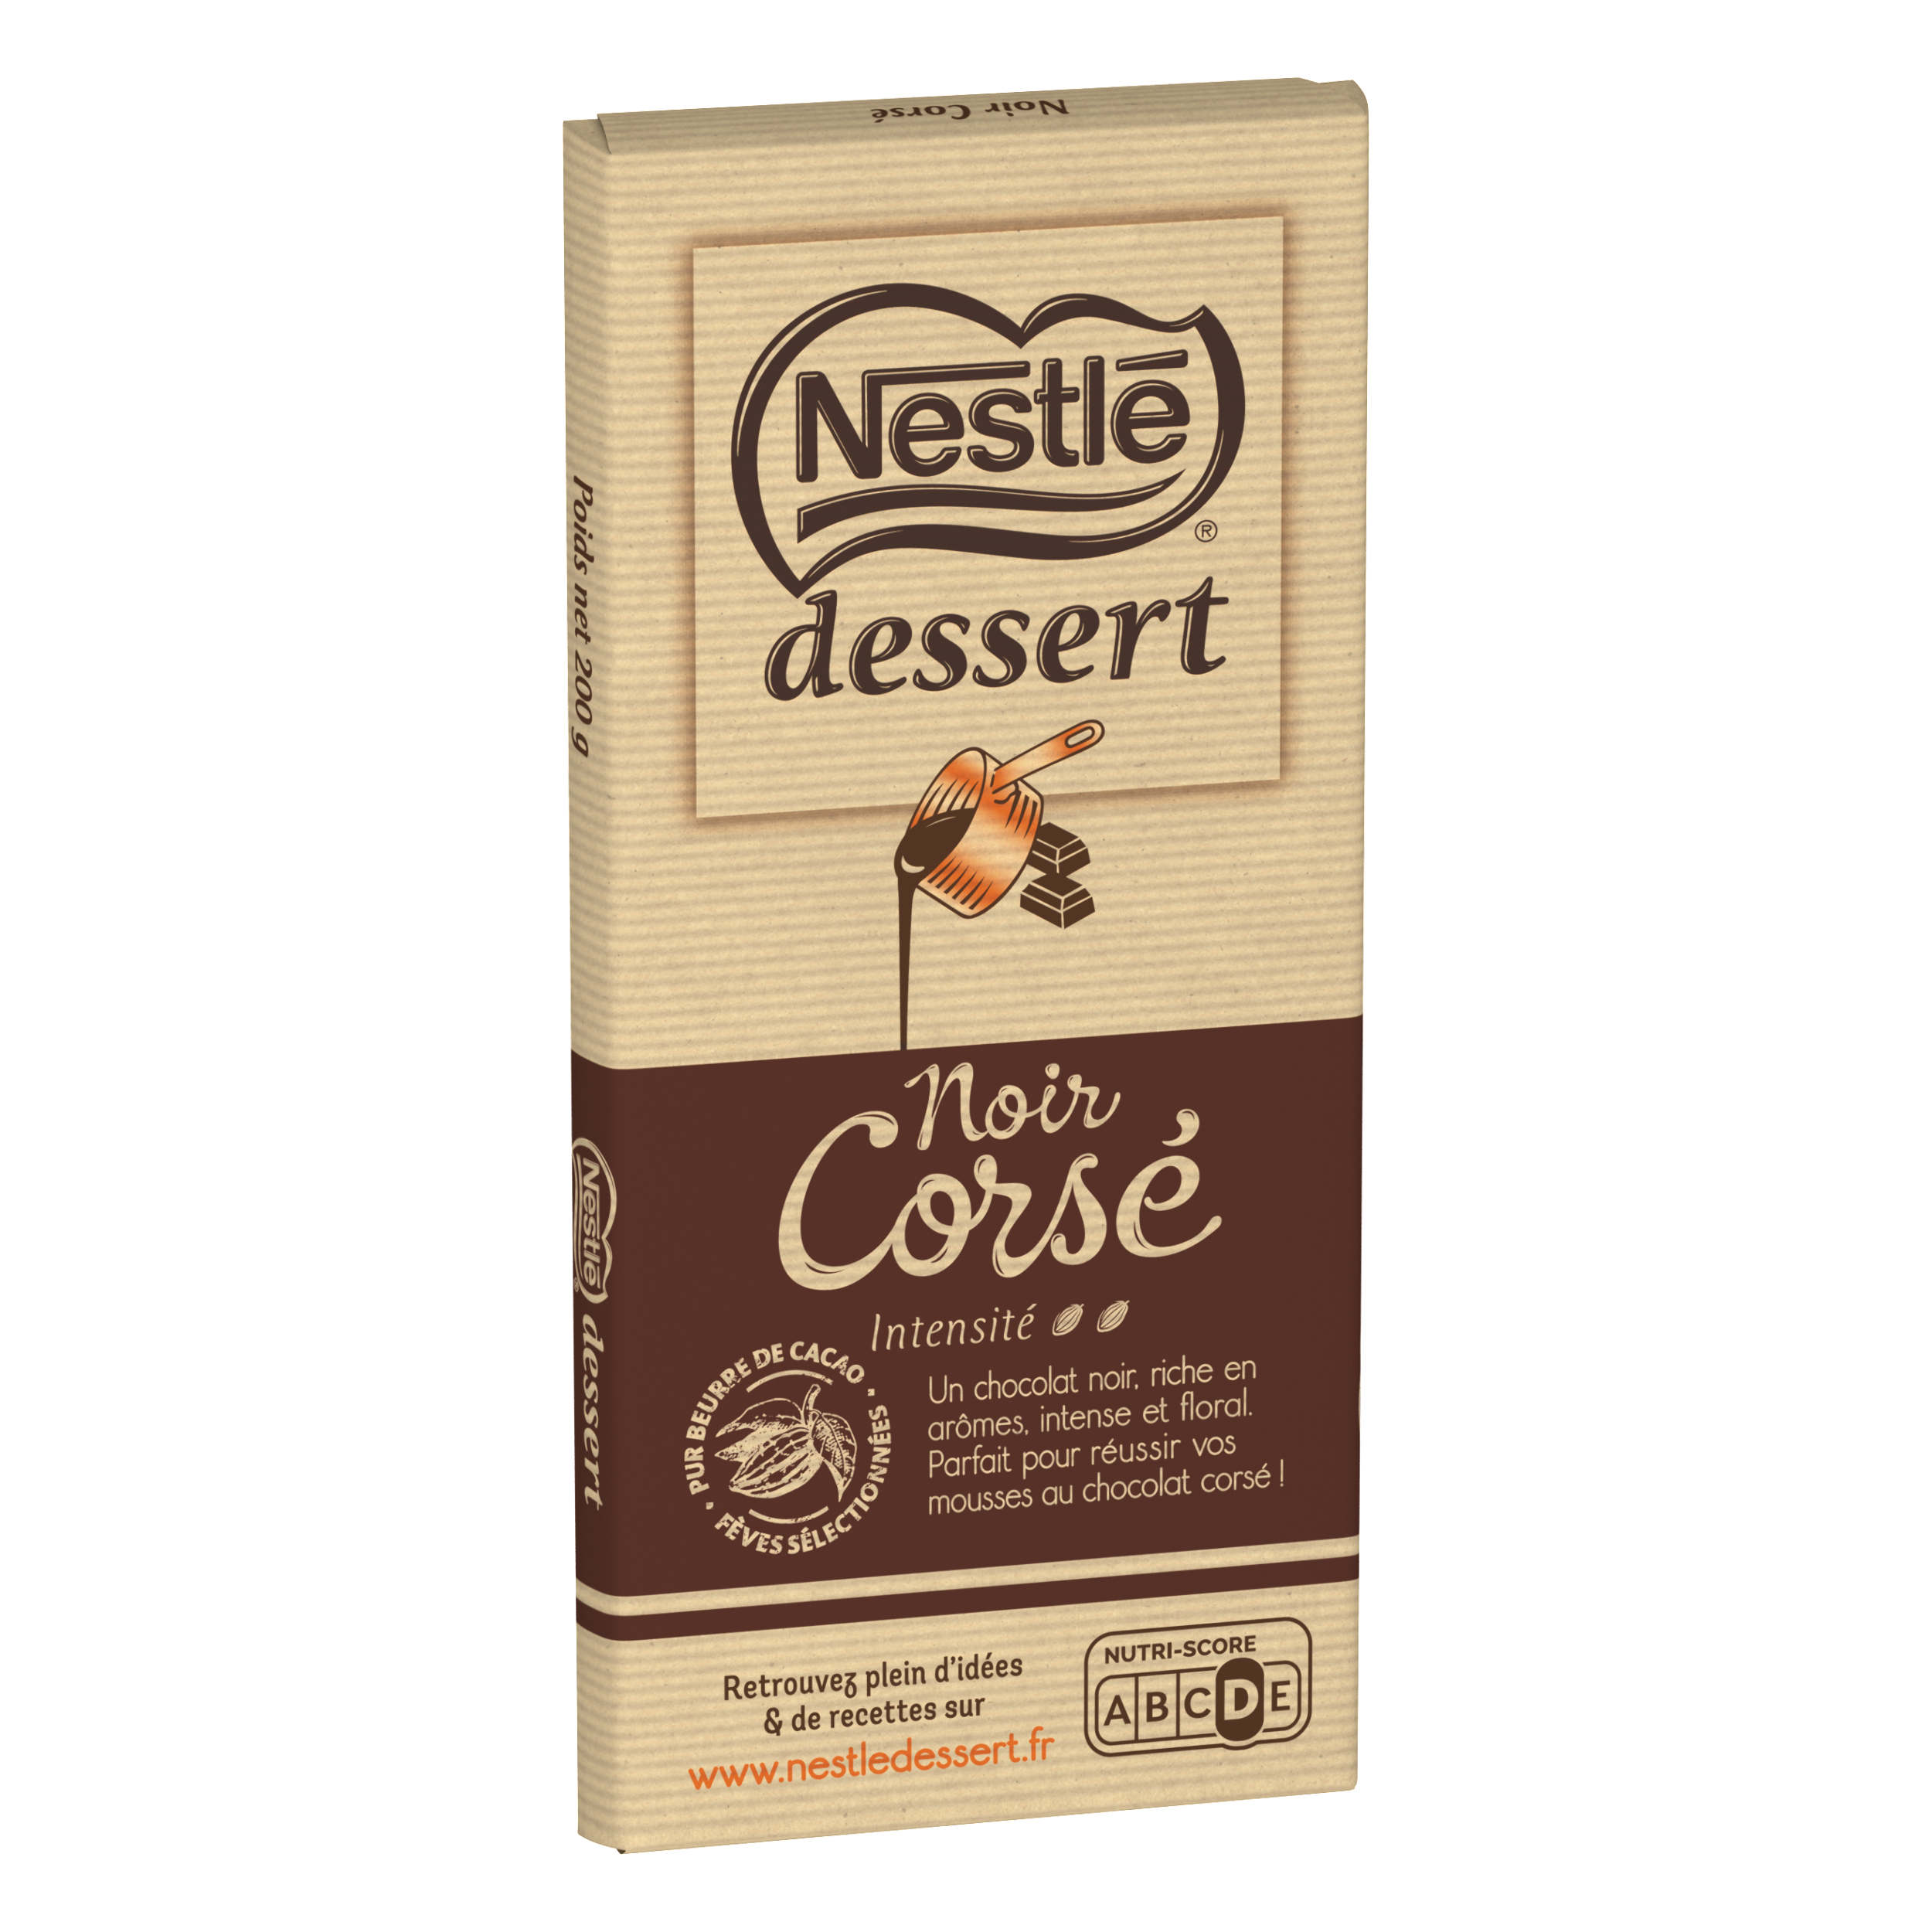 Chocolat noir corsé 80% les recettes de l'atelier, Nestlé (100 g